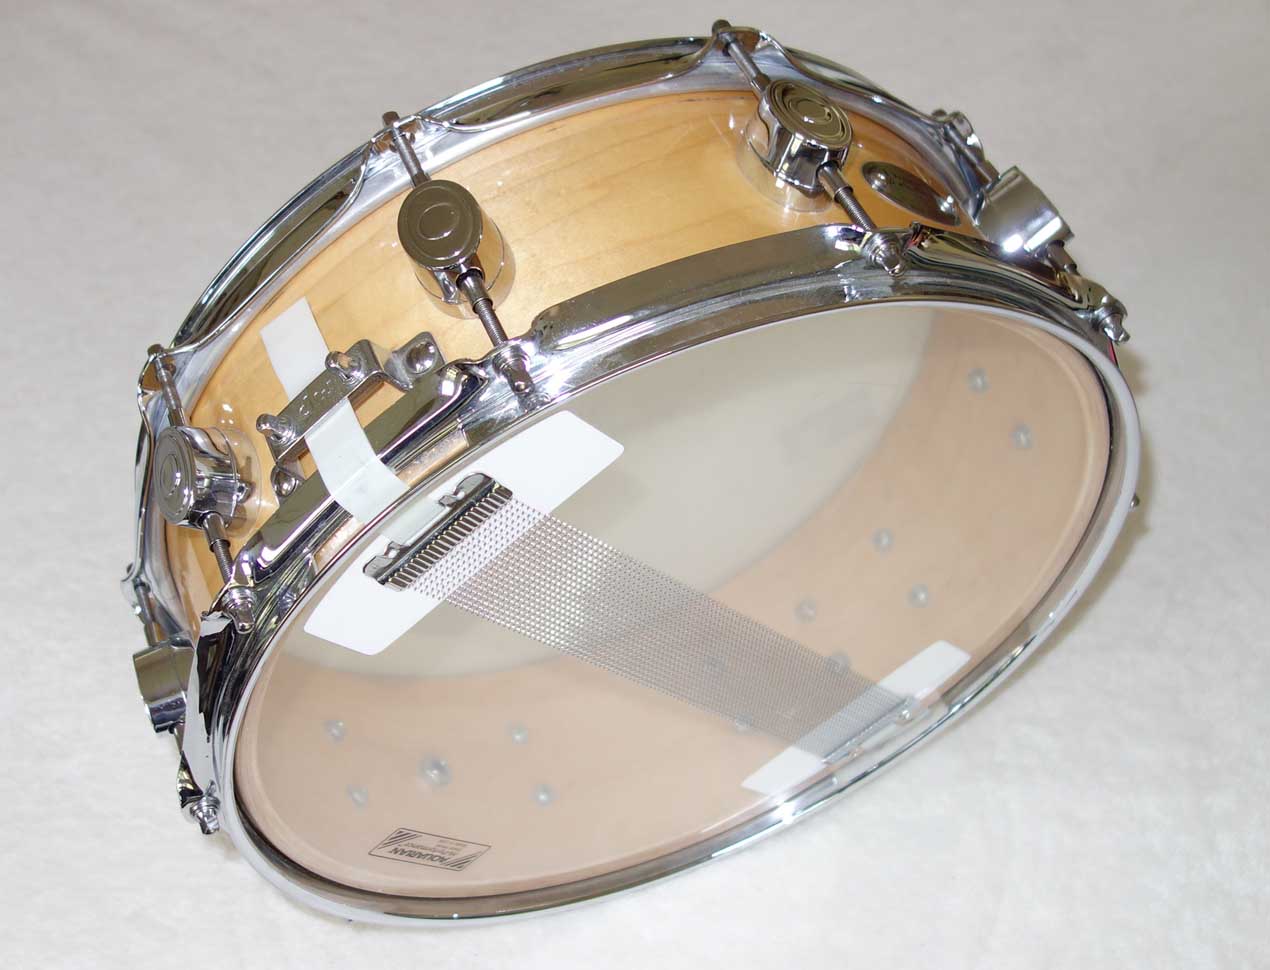 Drum Workshop Maple Snare Drum 14" x 5"